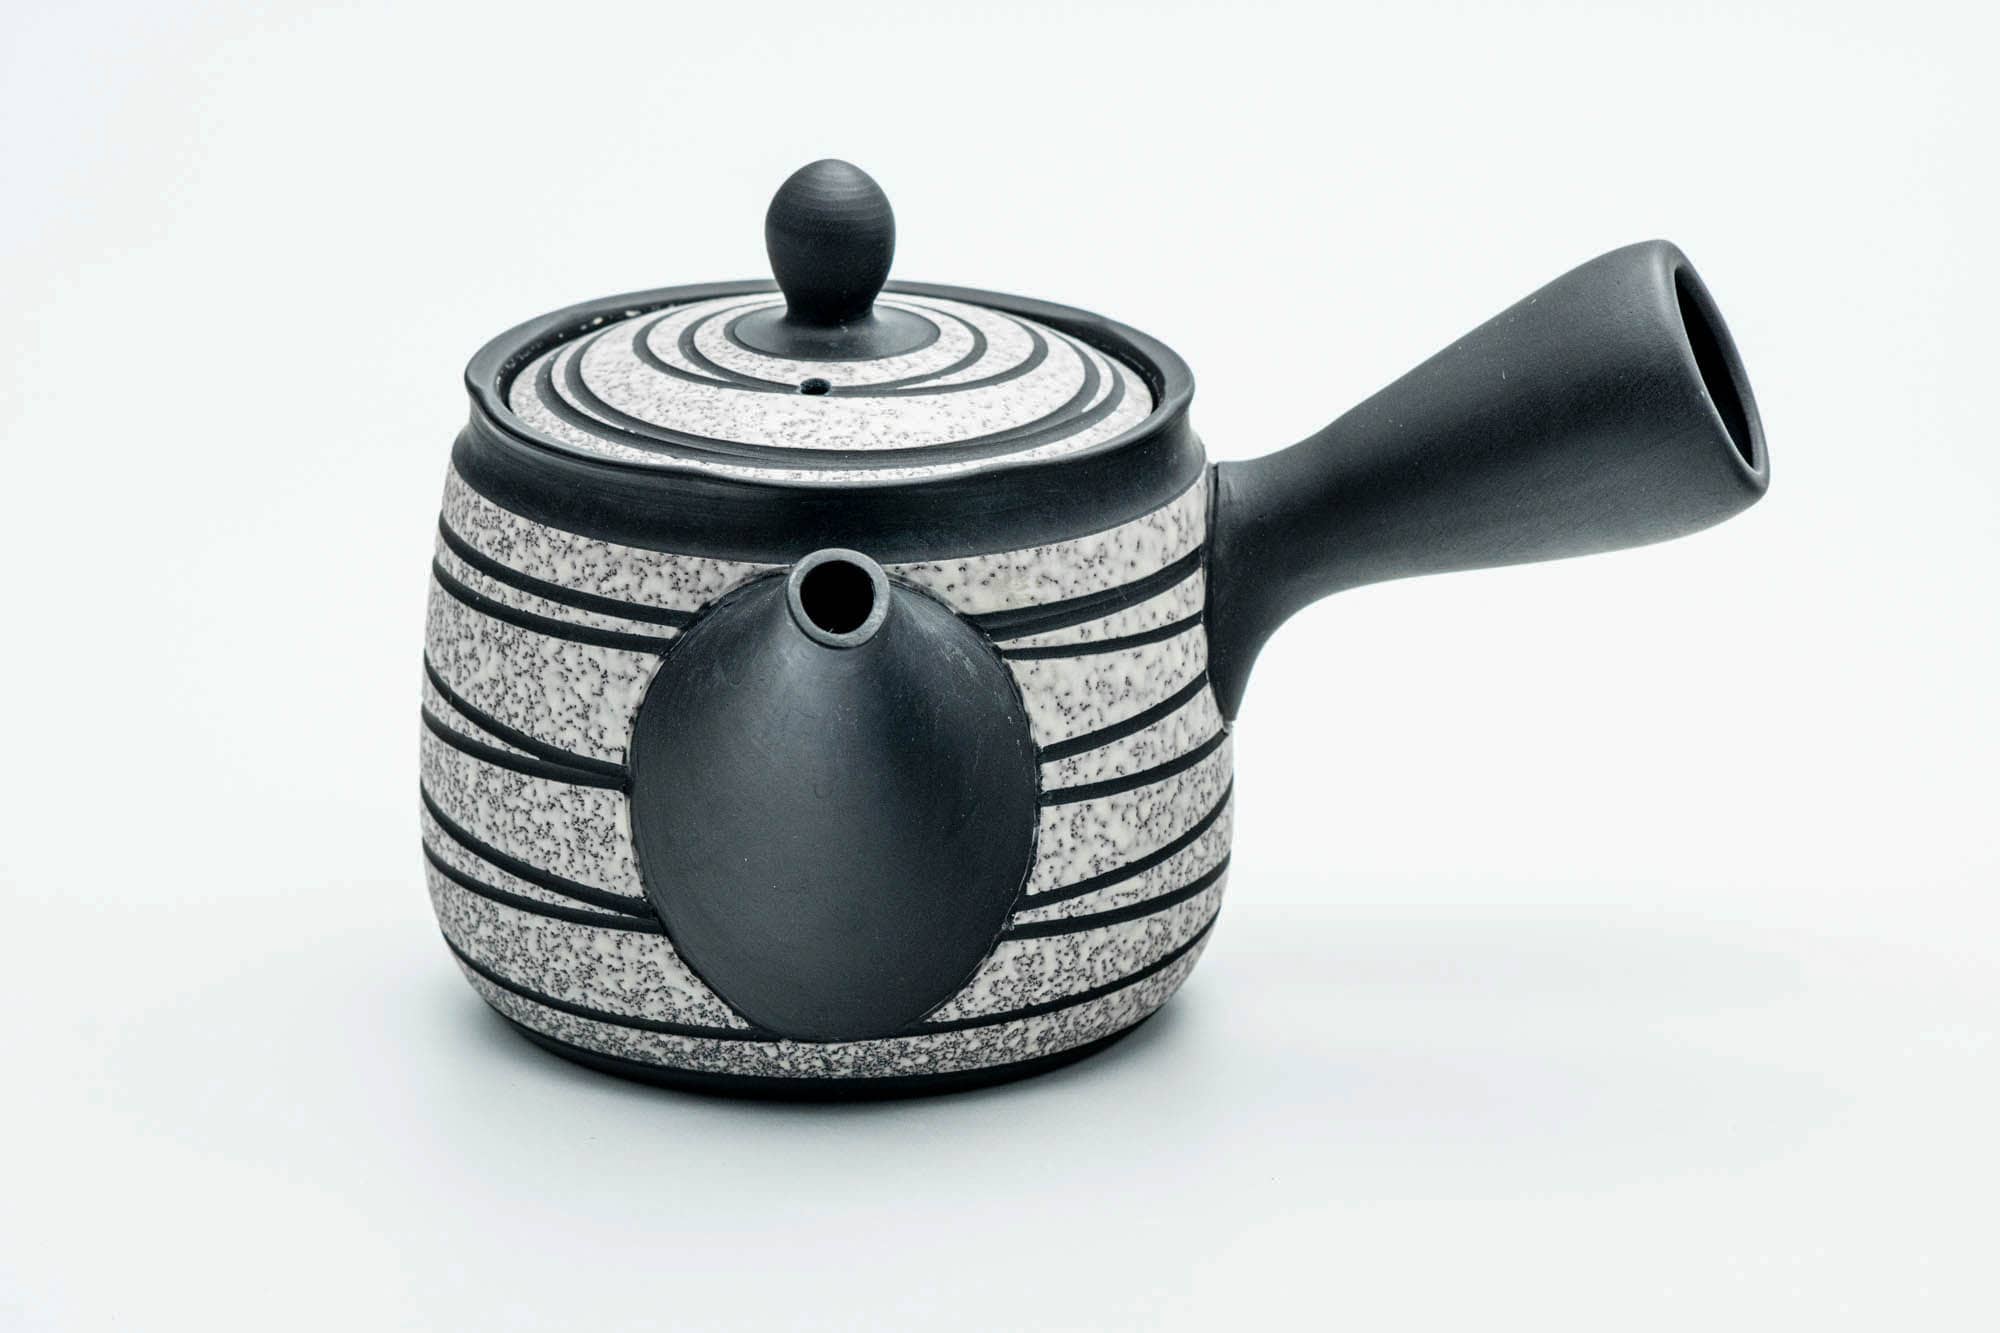 Japanese Kyusu - Black Striped White Textured Tokoname-yaki Obi-ami Mesh Teapot - 360ml